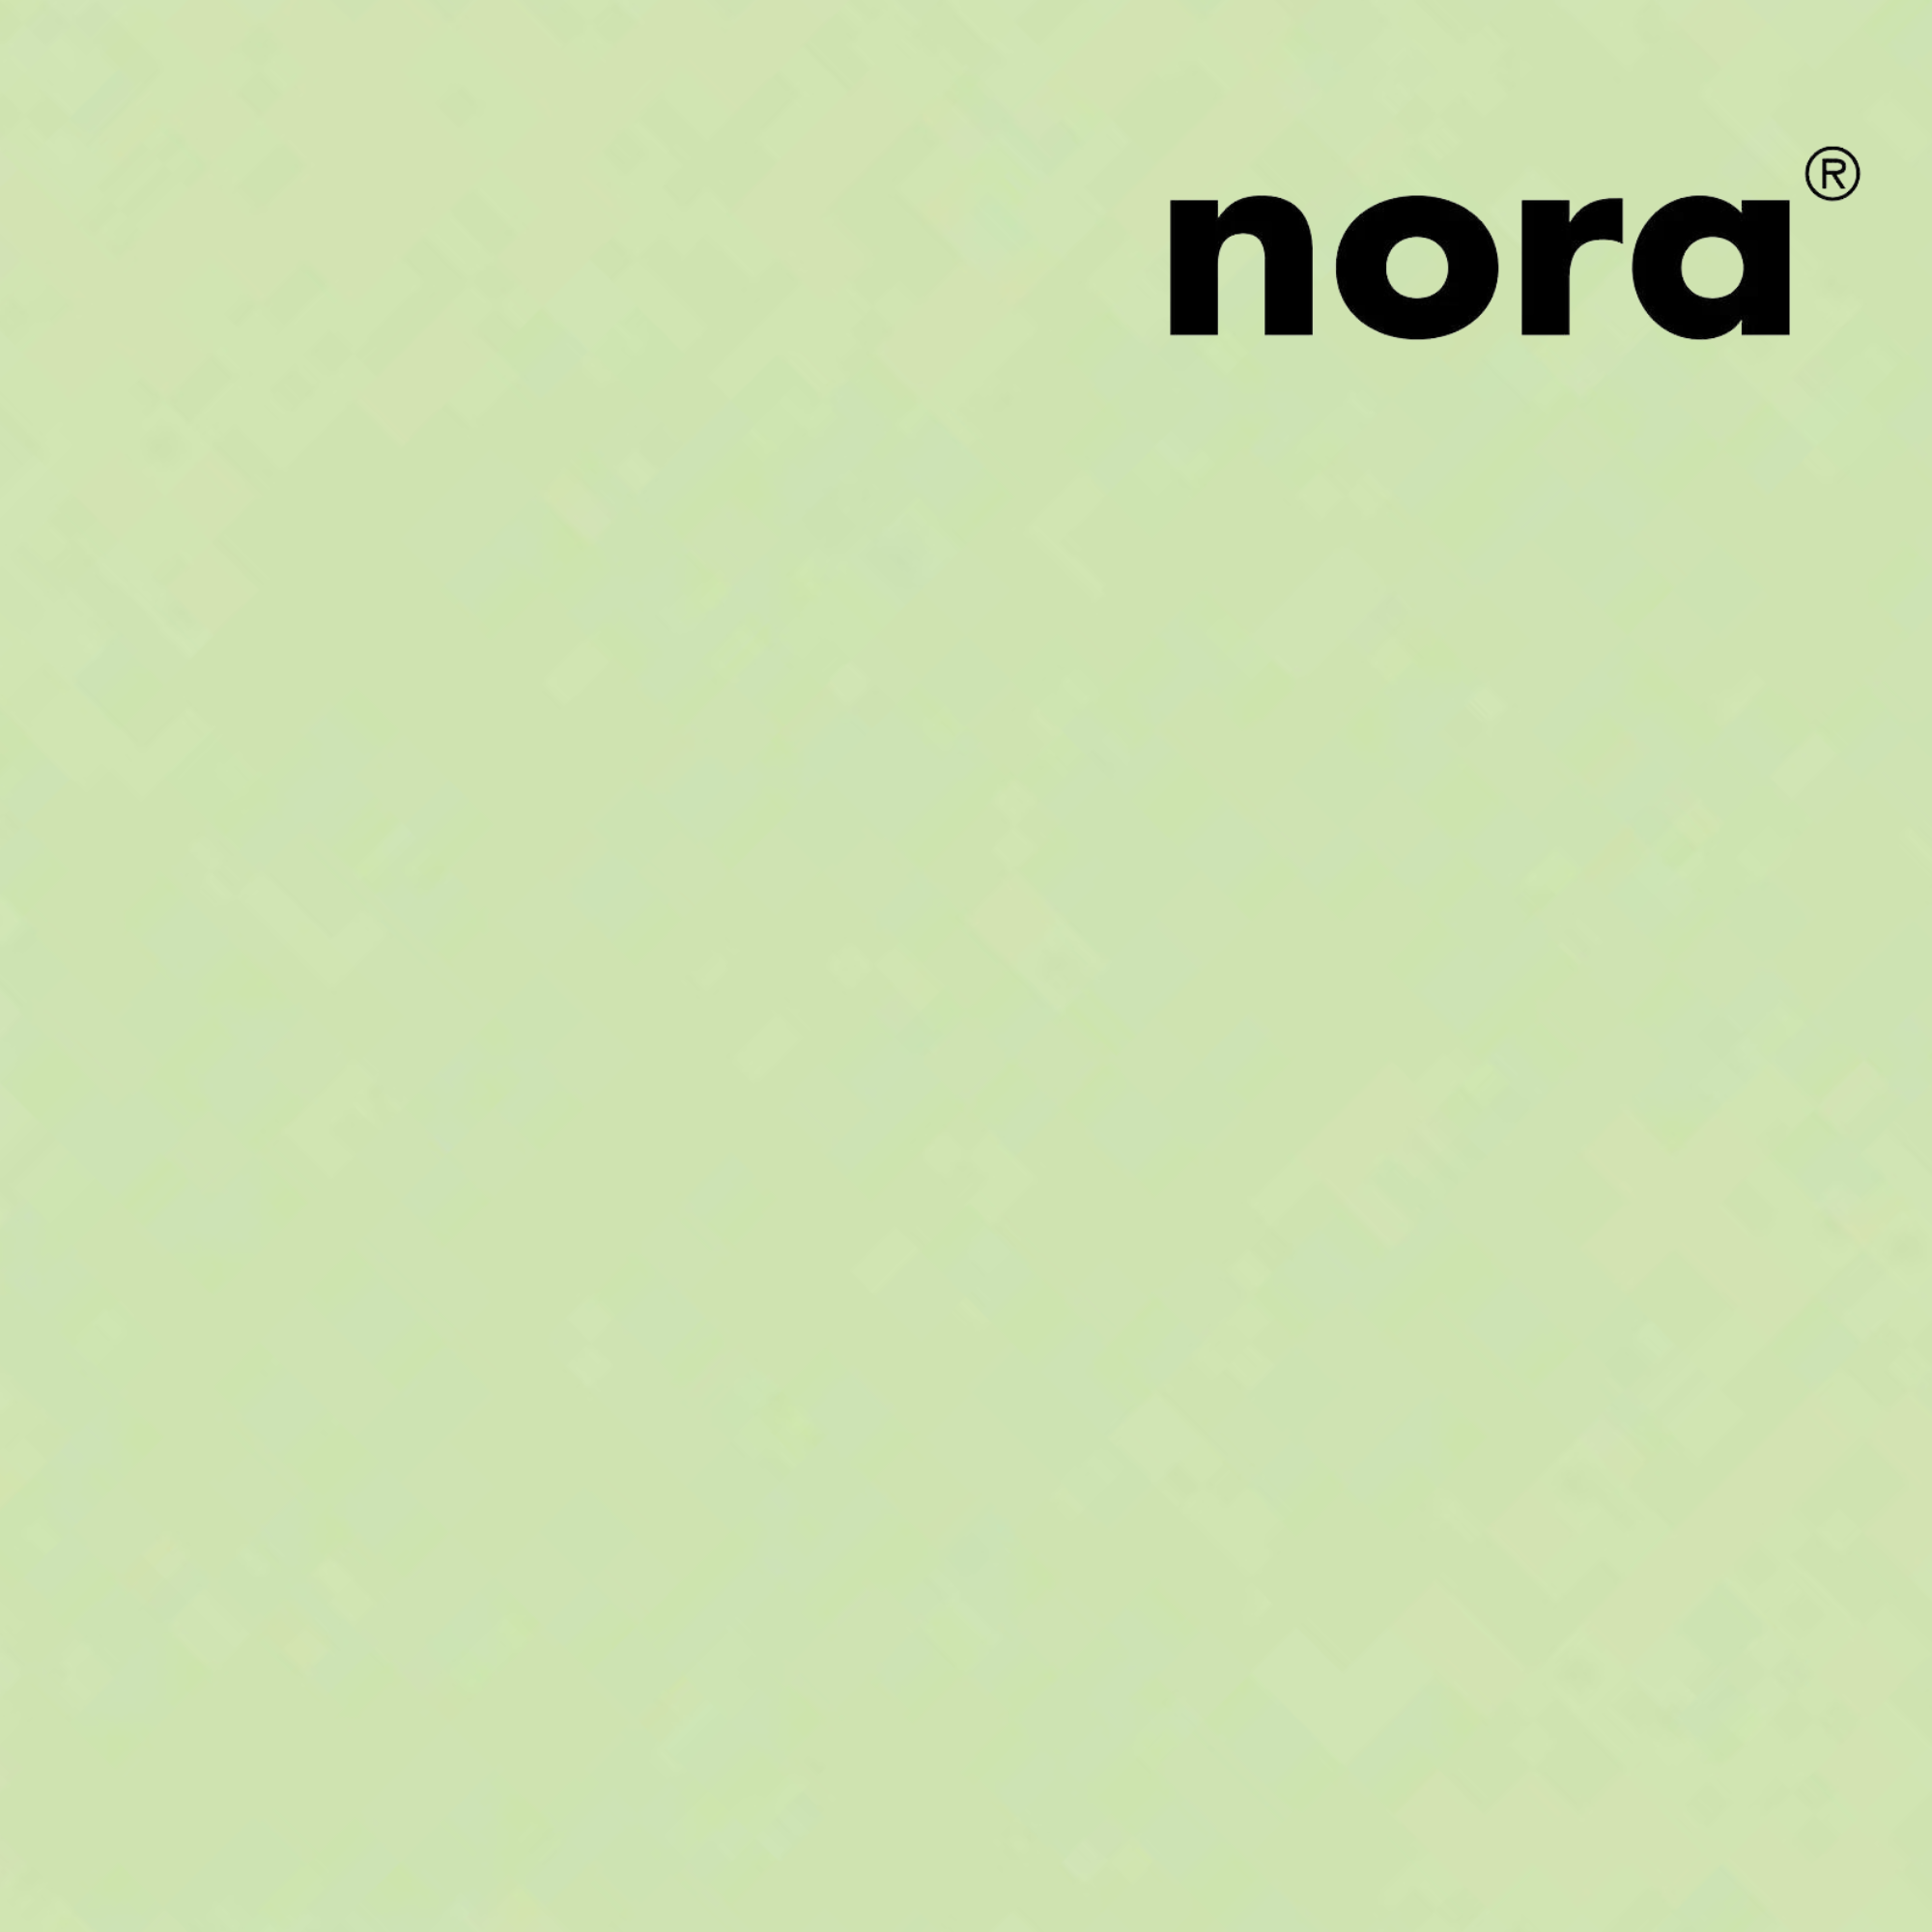 Lunatec EP - EVA - Shore 22 - 3 mm - Nora